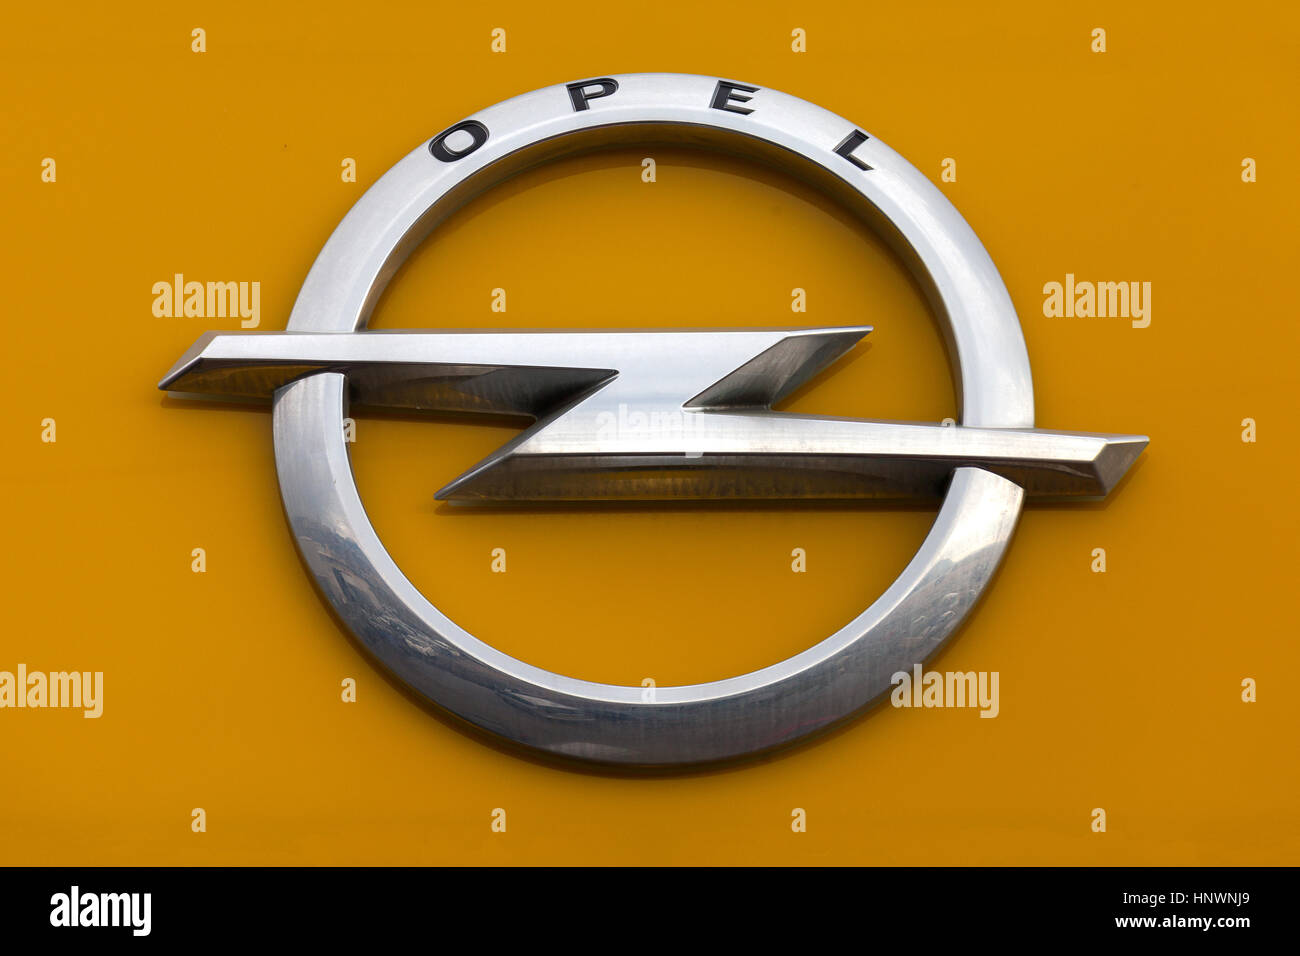 Opel signe en un concessionnaire local. Opel est un constructeur automobile allemand ayant son siège en Allemagne, filiale du groupe américain General Motors. Banque D'Images